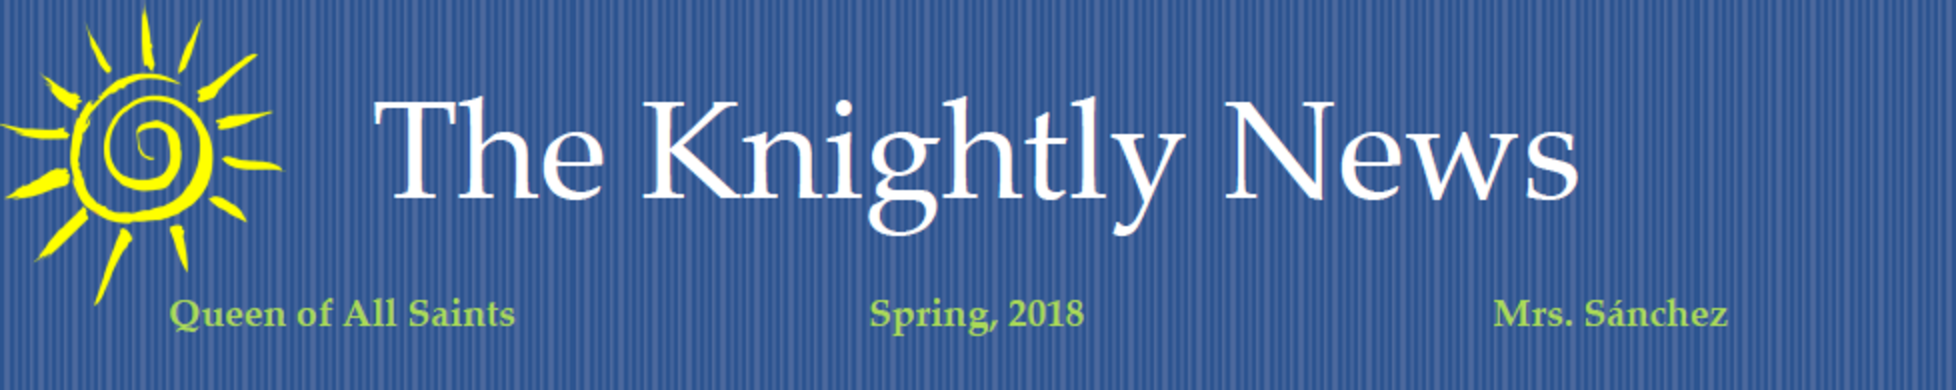 Knightly News Spring 2018